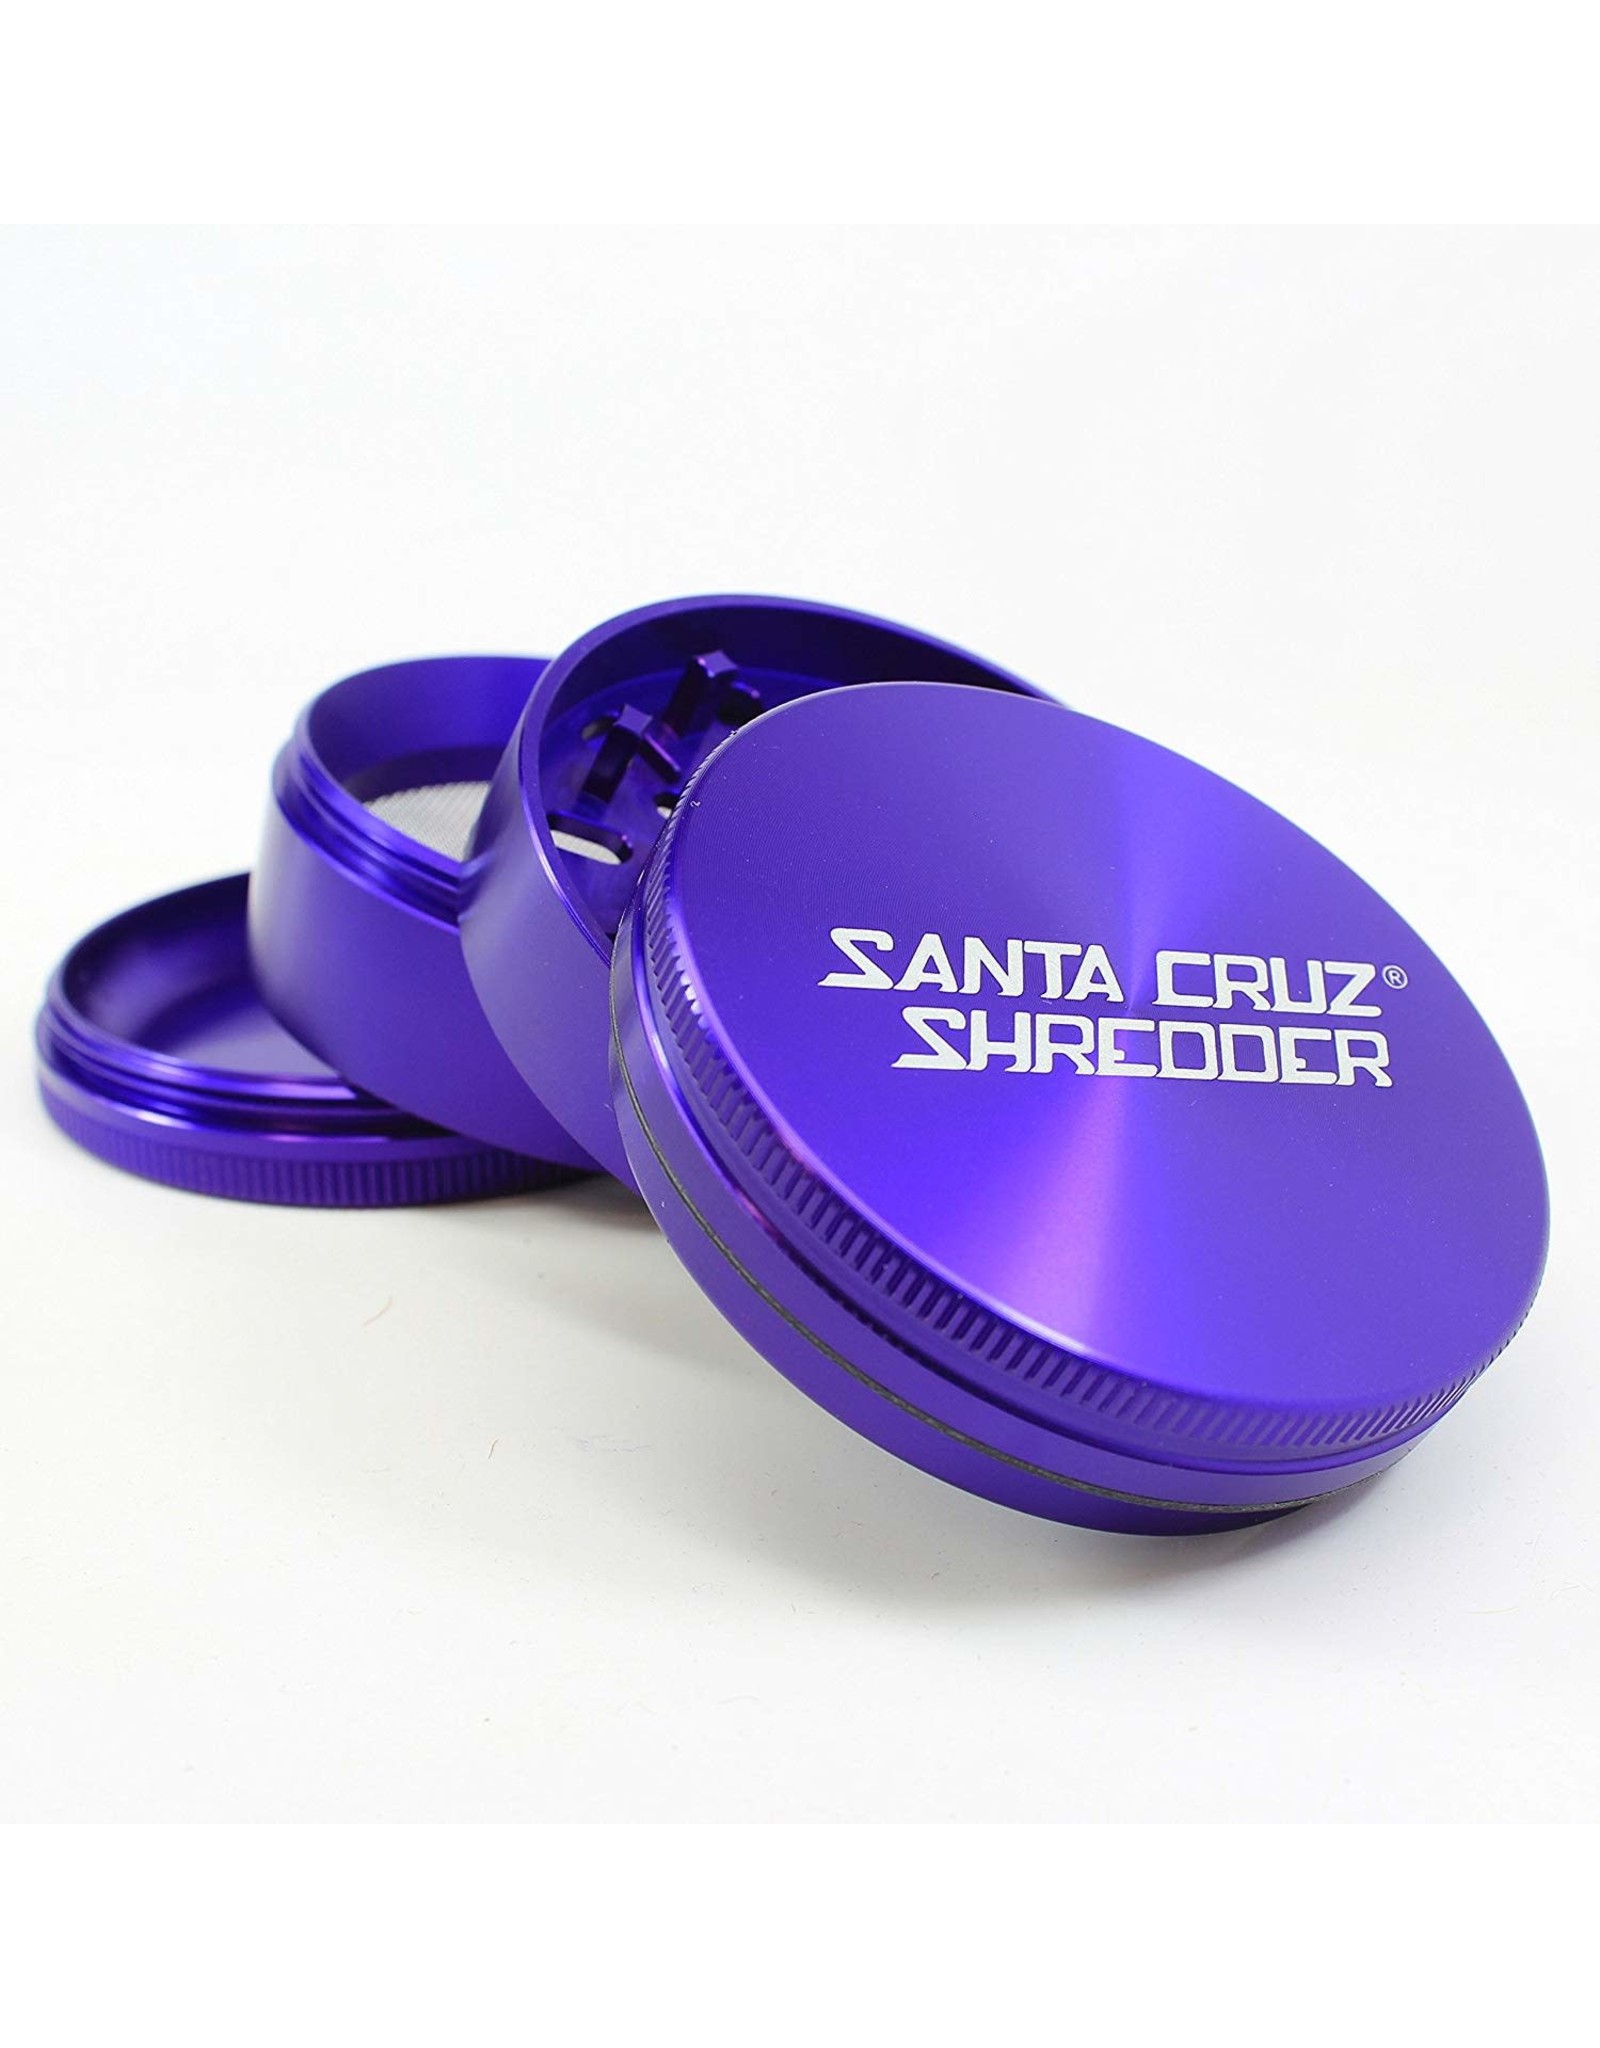 Santa Cruz Shredder Santa Cruz Shredder Large 4Pc Purple